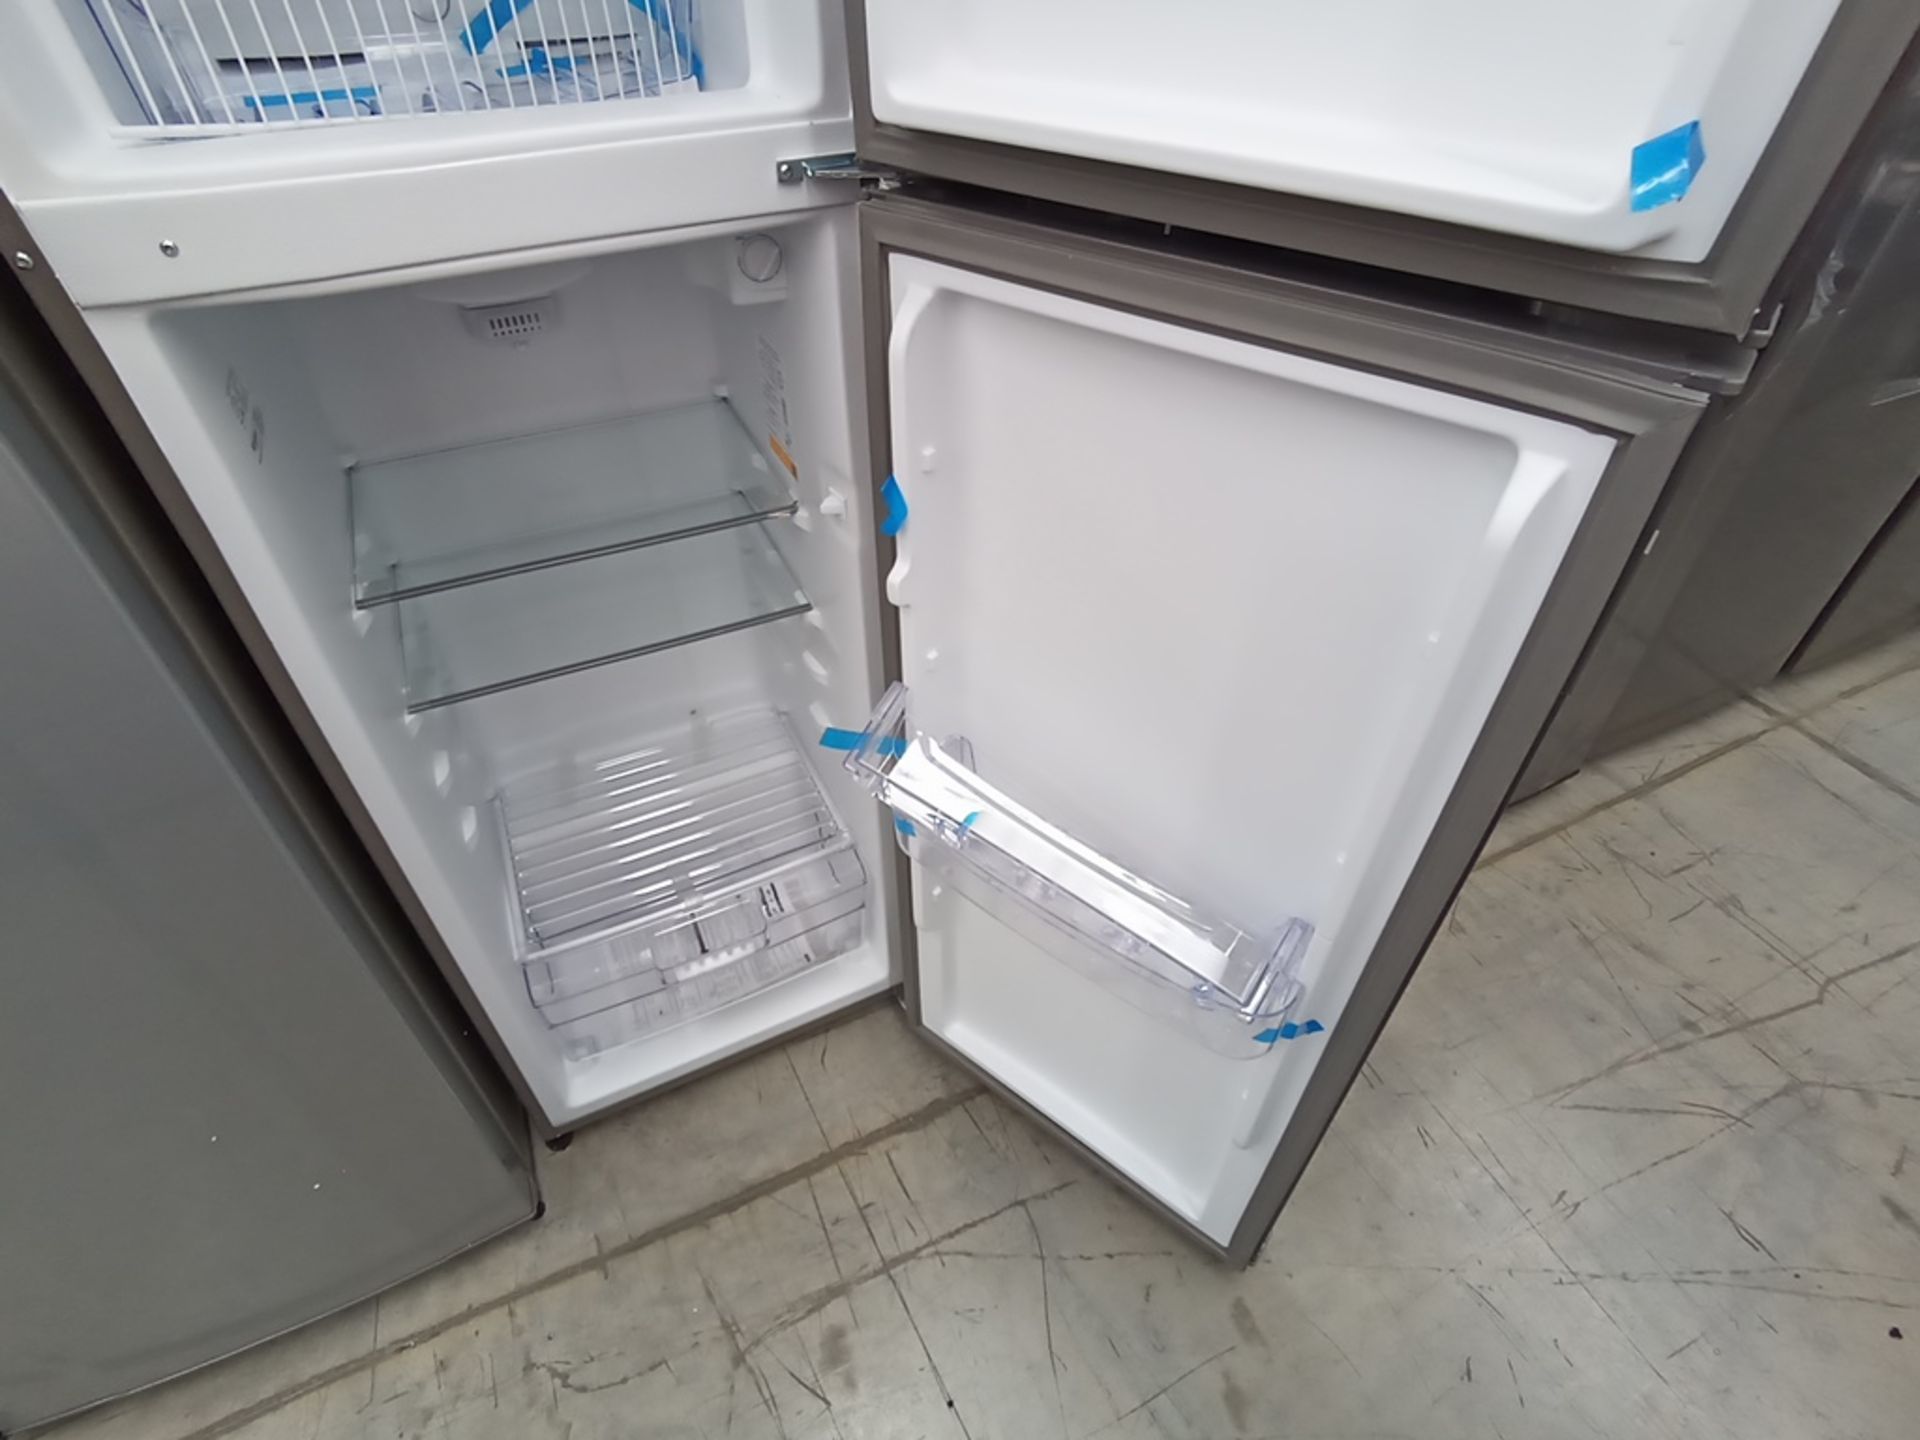 1 Refrigerador Marca Acros, Modelo AT091FG, Serie VRA3383587, Color Gris con Estampado. Golpeado. F - Image 26 of 30